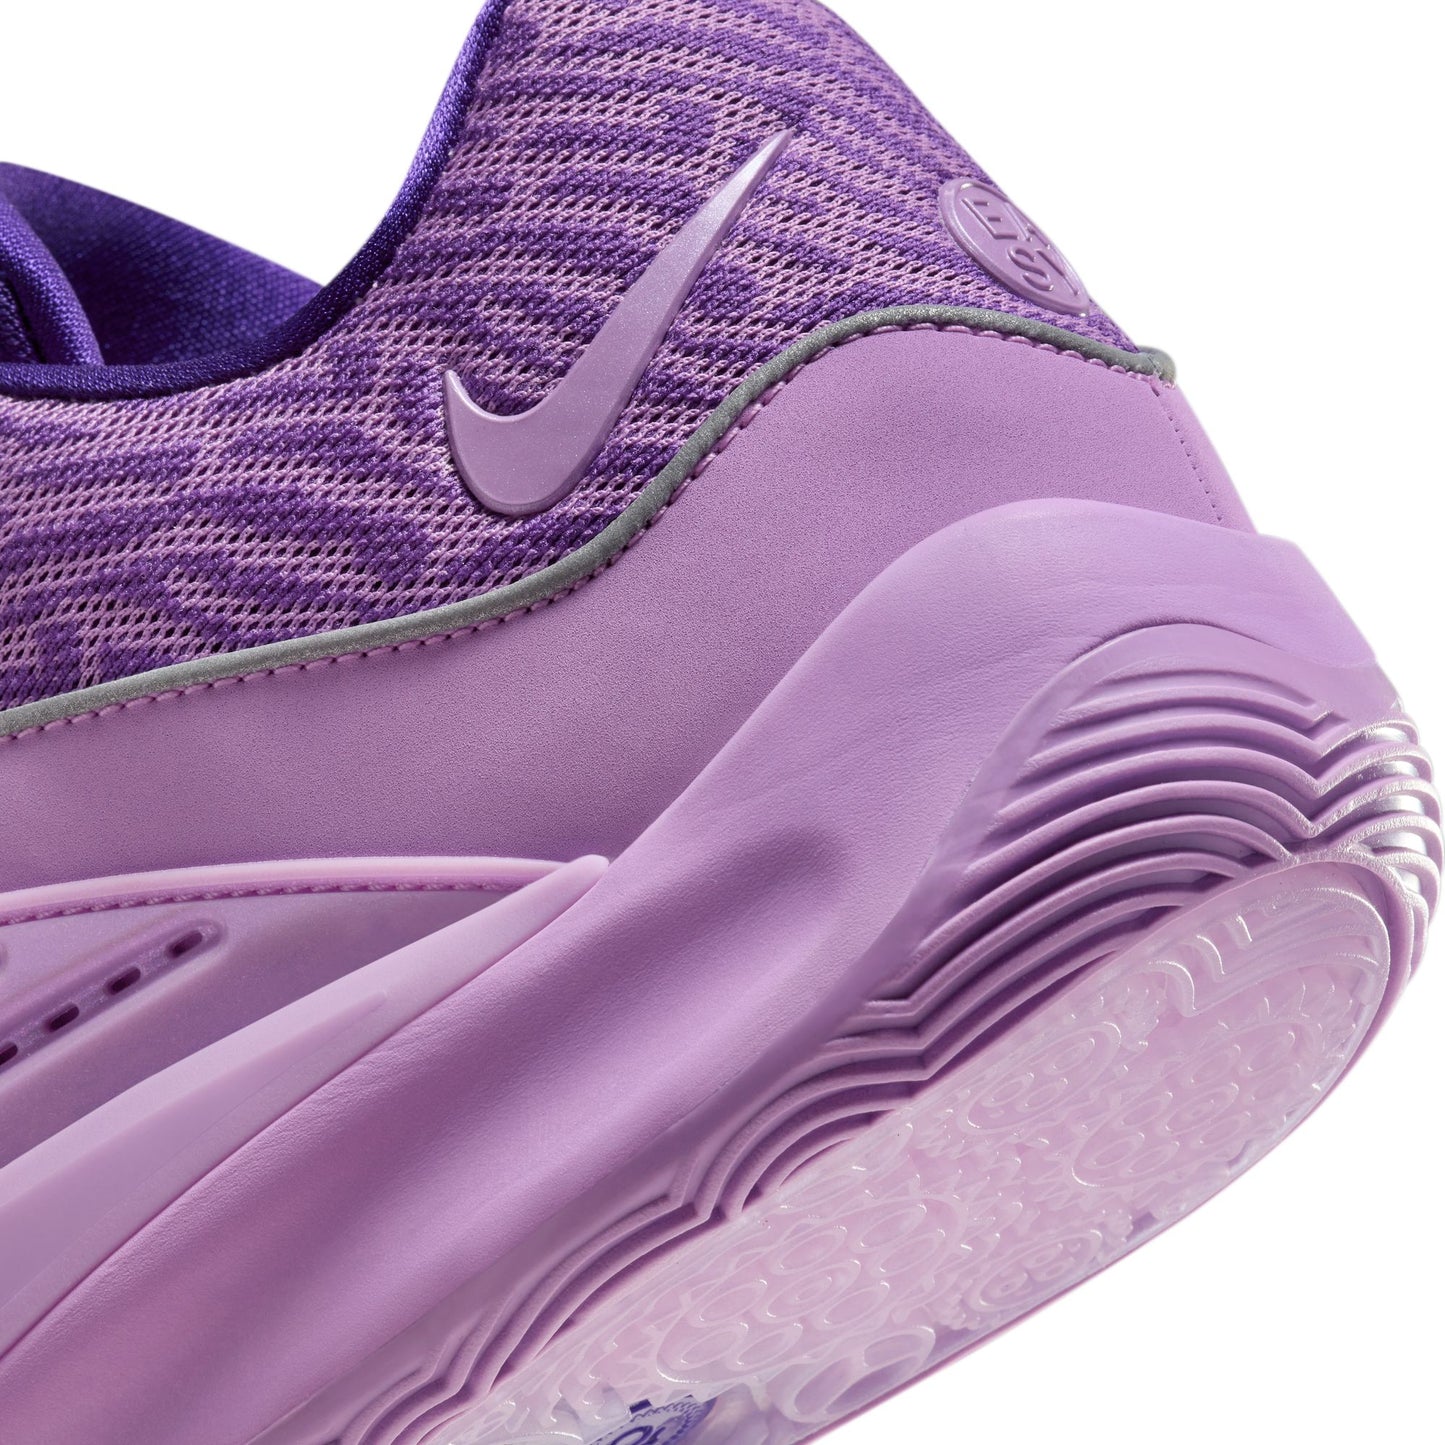 Nike KD16 "Field Purple" - DV2917-500